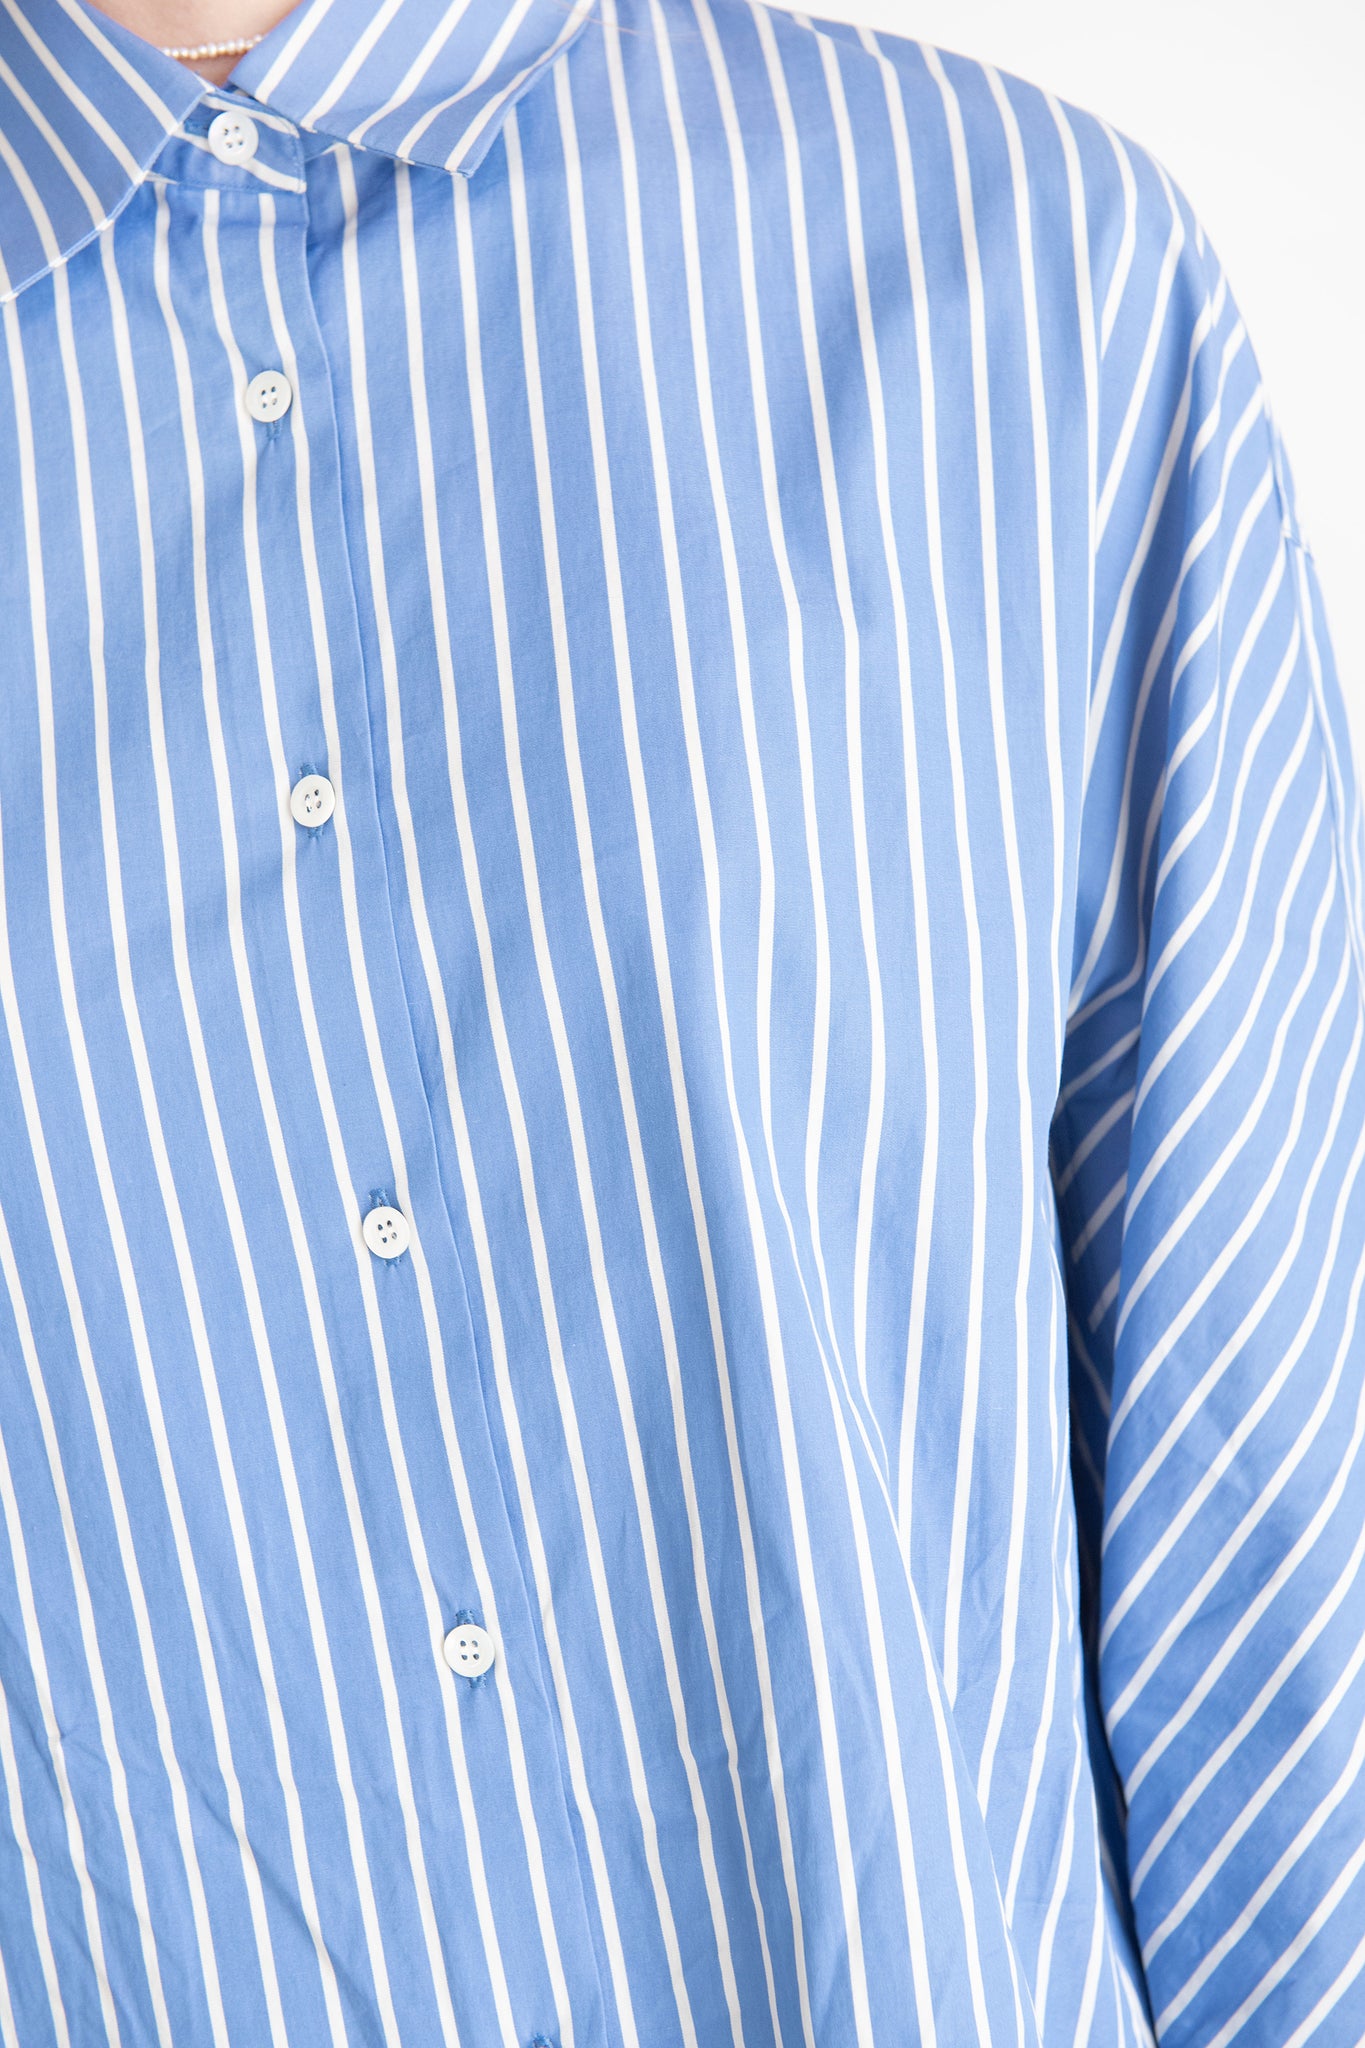 DRIES VAN NOTEN - Stripe Shirt, Light Blue